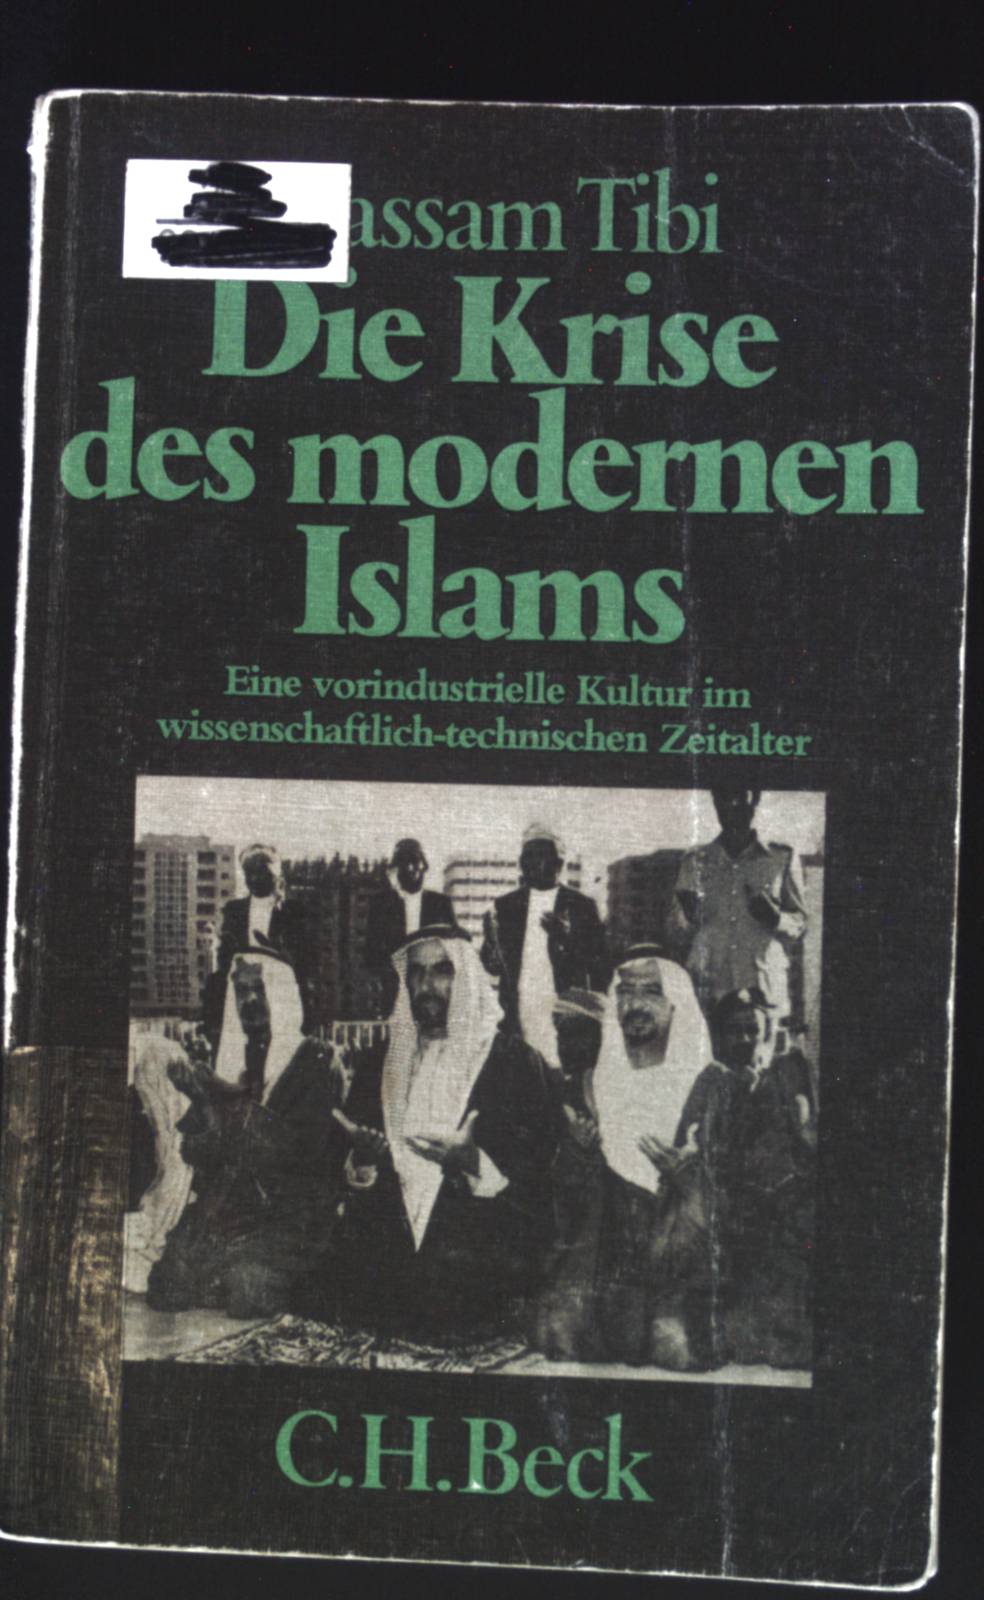 Die Krise des modernen Islams : e. vorindustrielle Kultur im wissenschaftl.-techn. Zeitalter. Beck'sche schwarze Reihe ; Bd. 228 - Tibi, Bassam